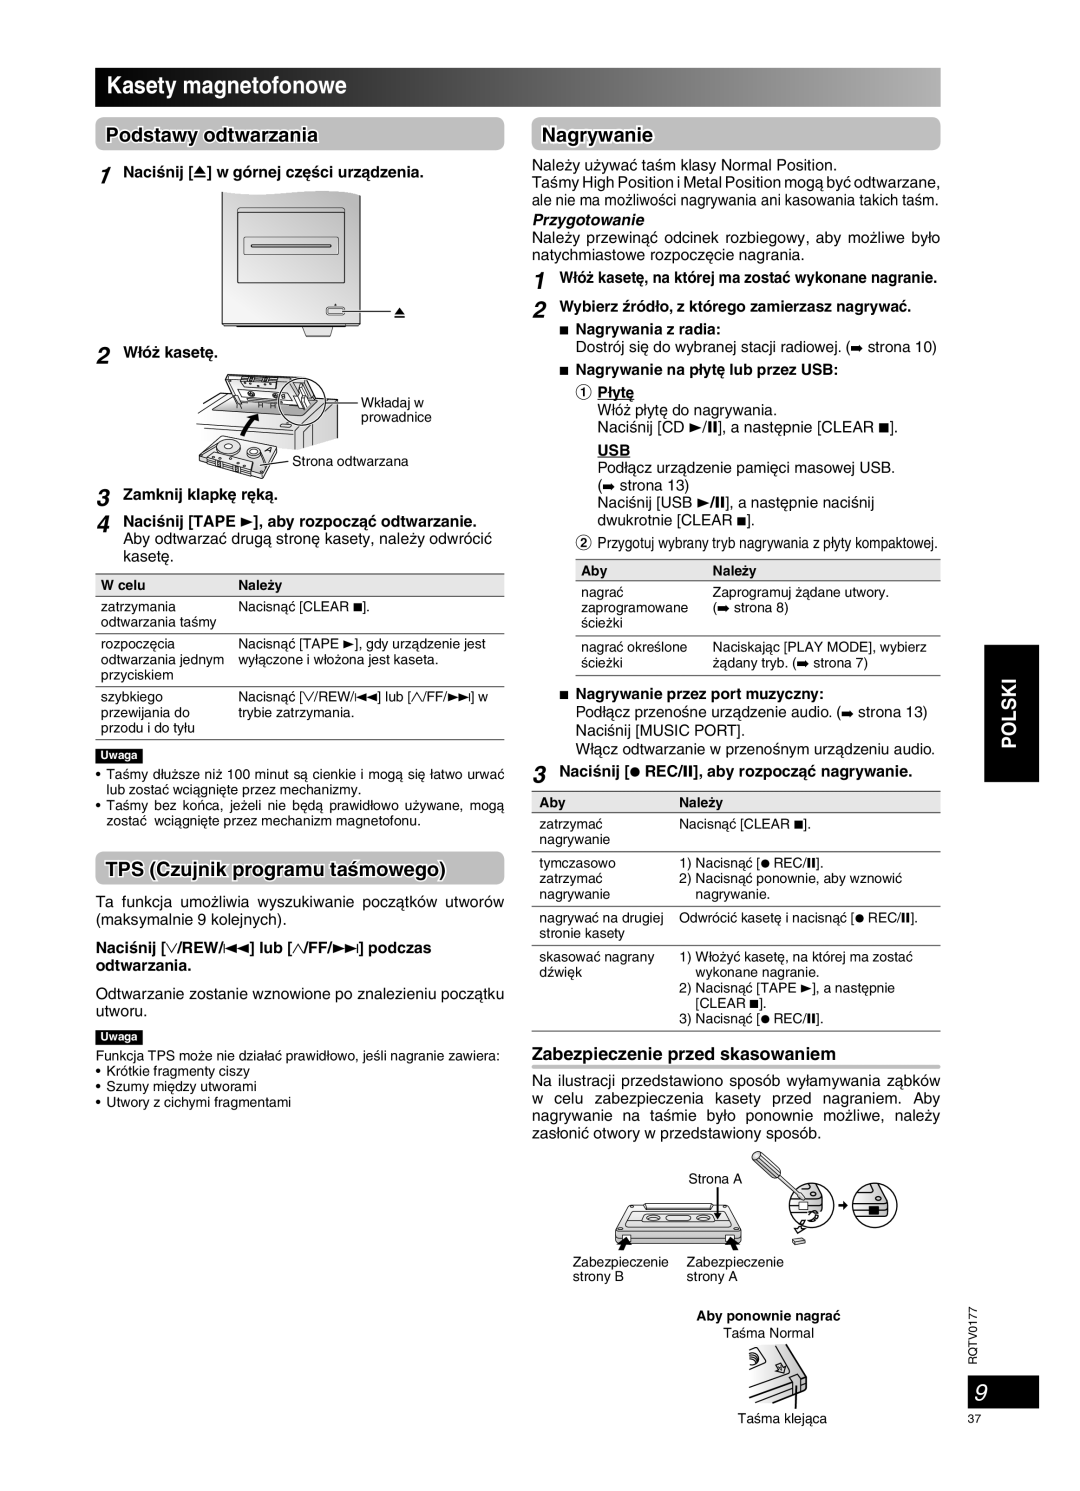 Panasonic SC-PM45 manual Kasety magnetofonowe, TPS Czujnik programu taÊmowego, Nagrywanie, Podstawy odtwarzania, Polski 